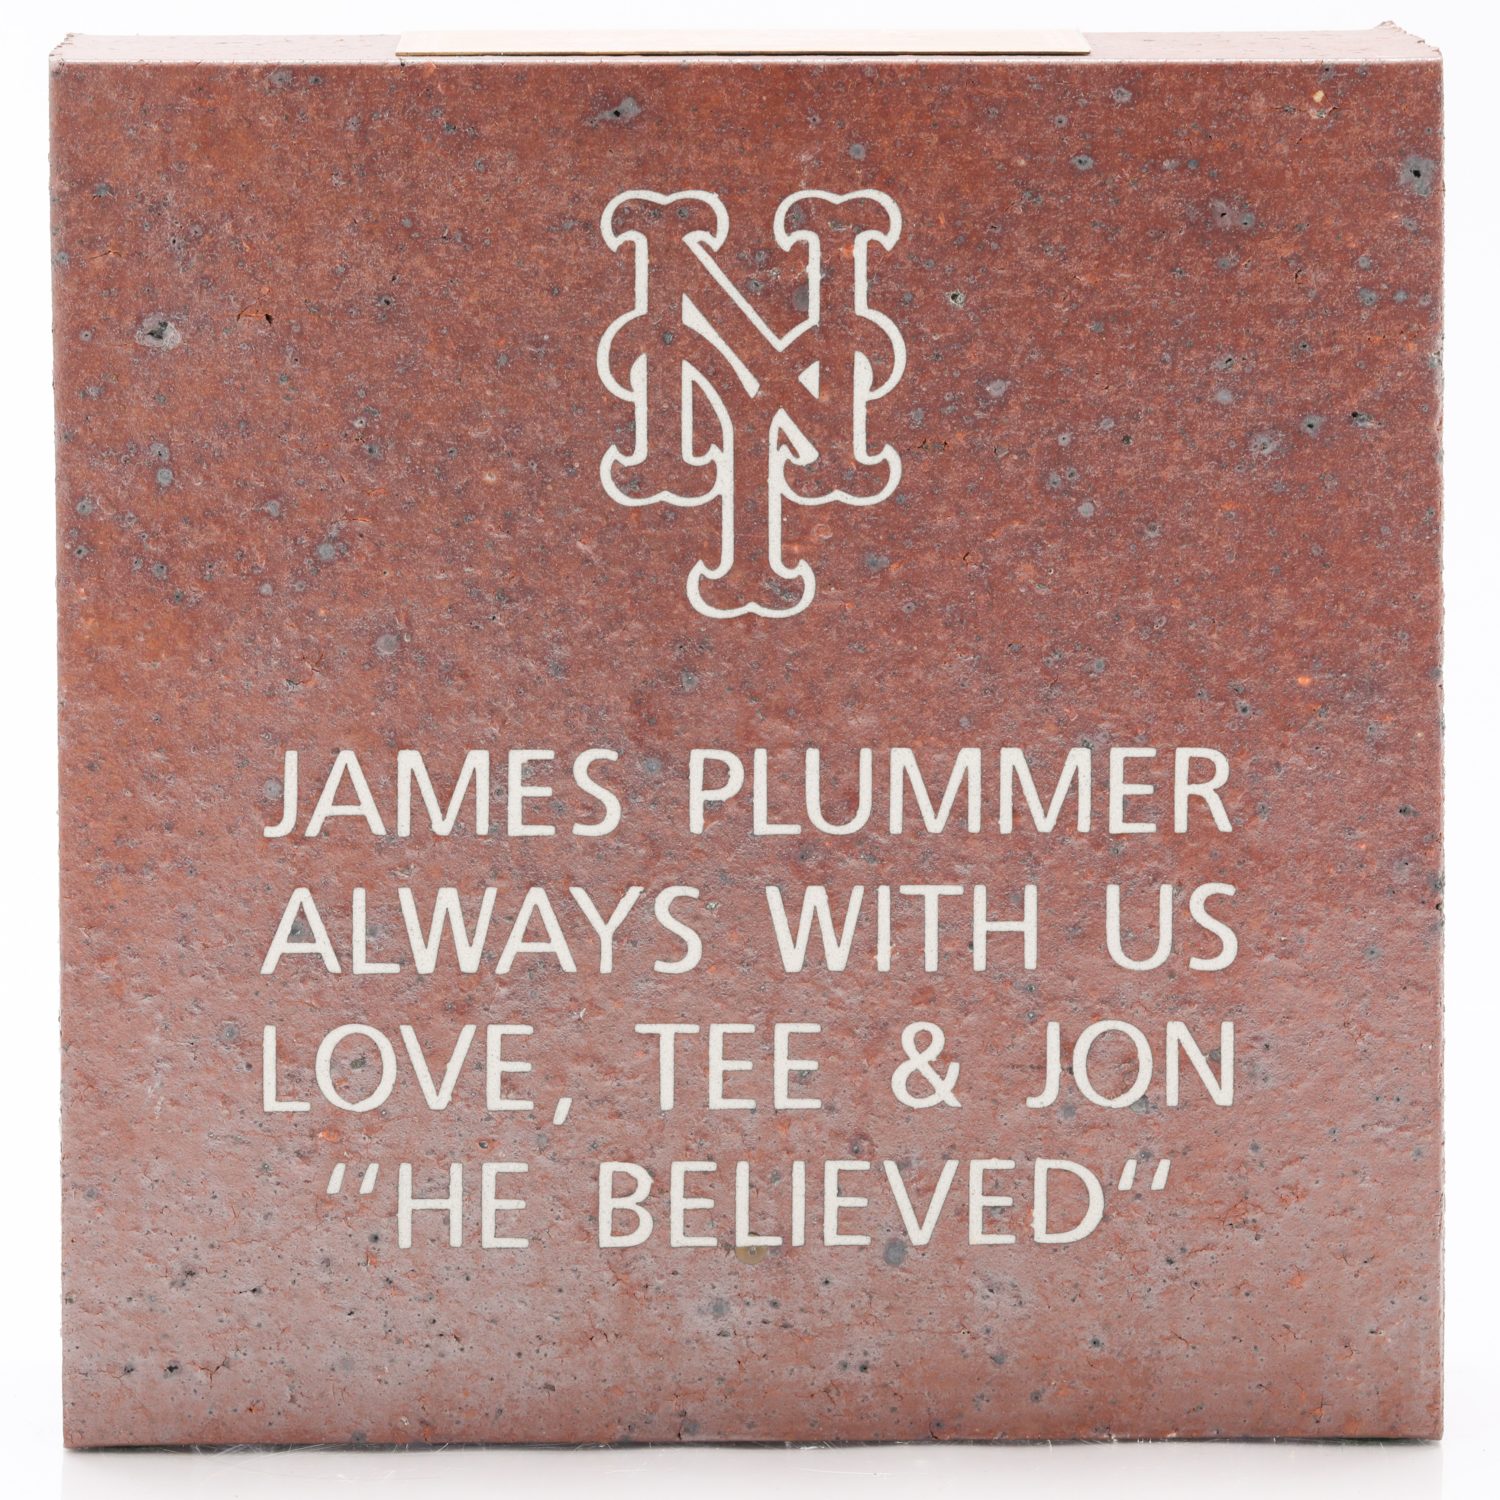 Plummer's Brick: He Believed